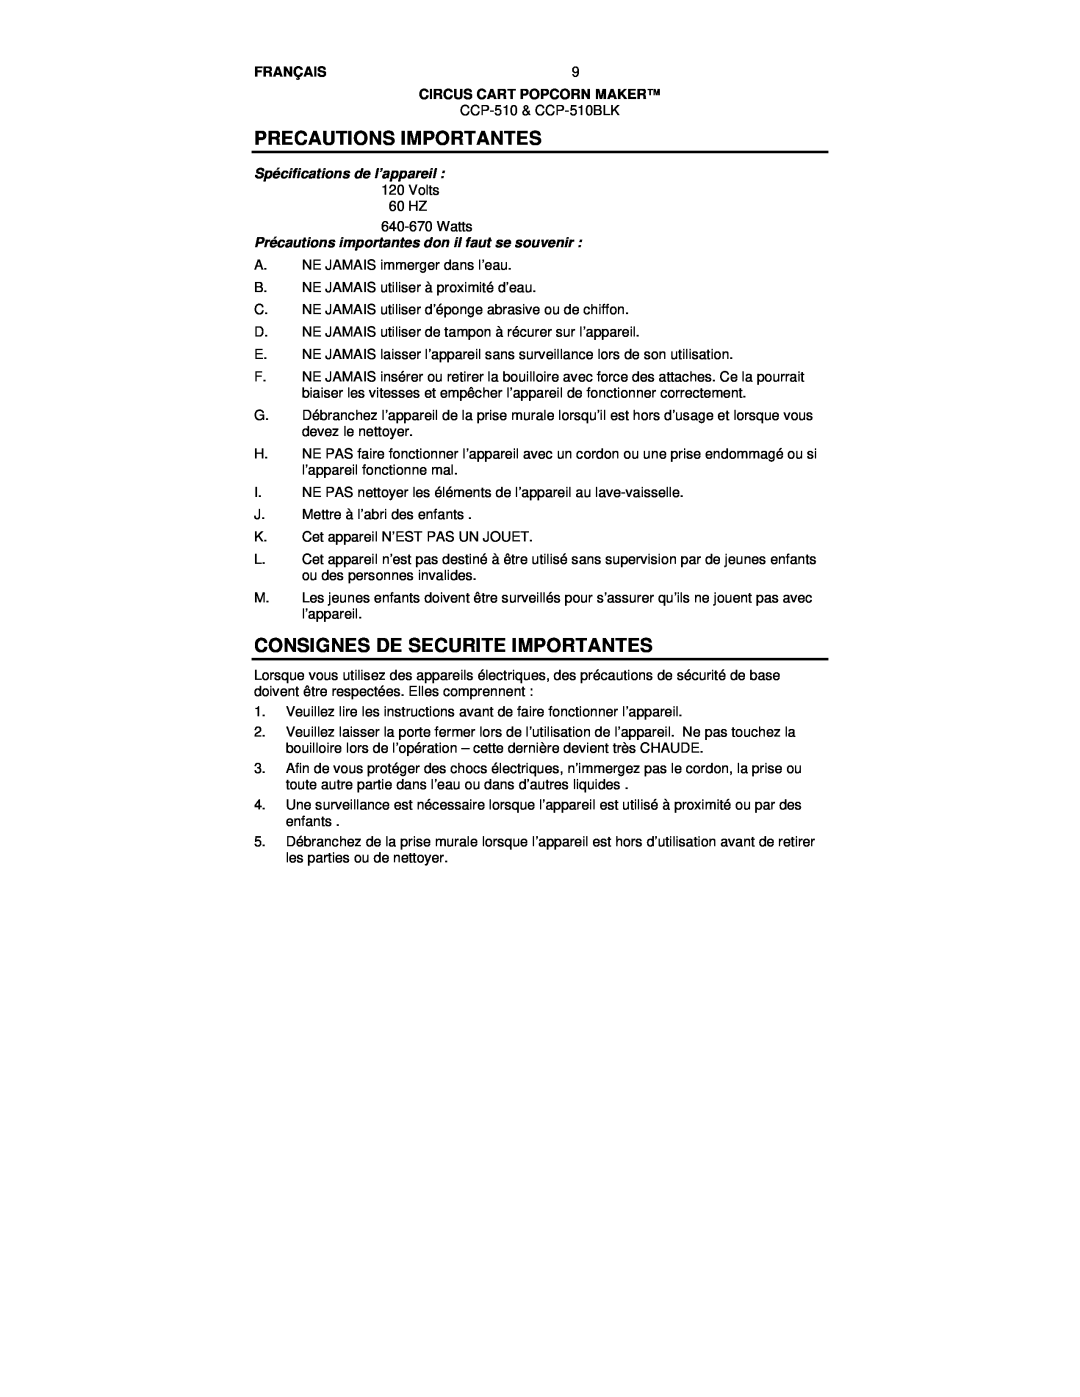 Nostalgia Electrics CCP-510 BLK manual Precautions Importantes, Consignes De Securite Importantes, Français 